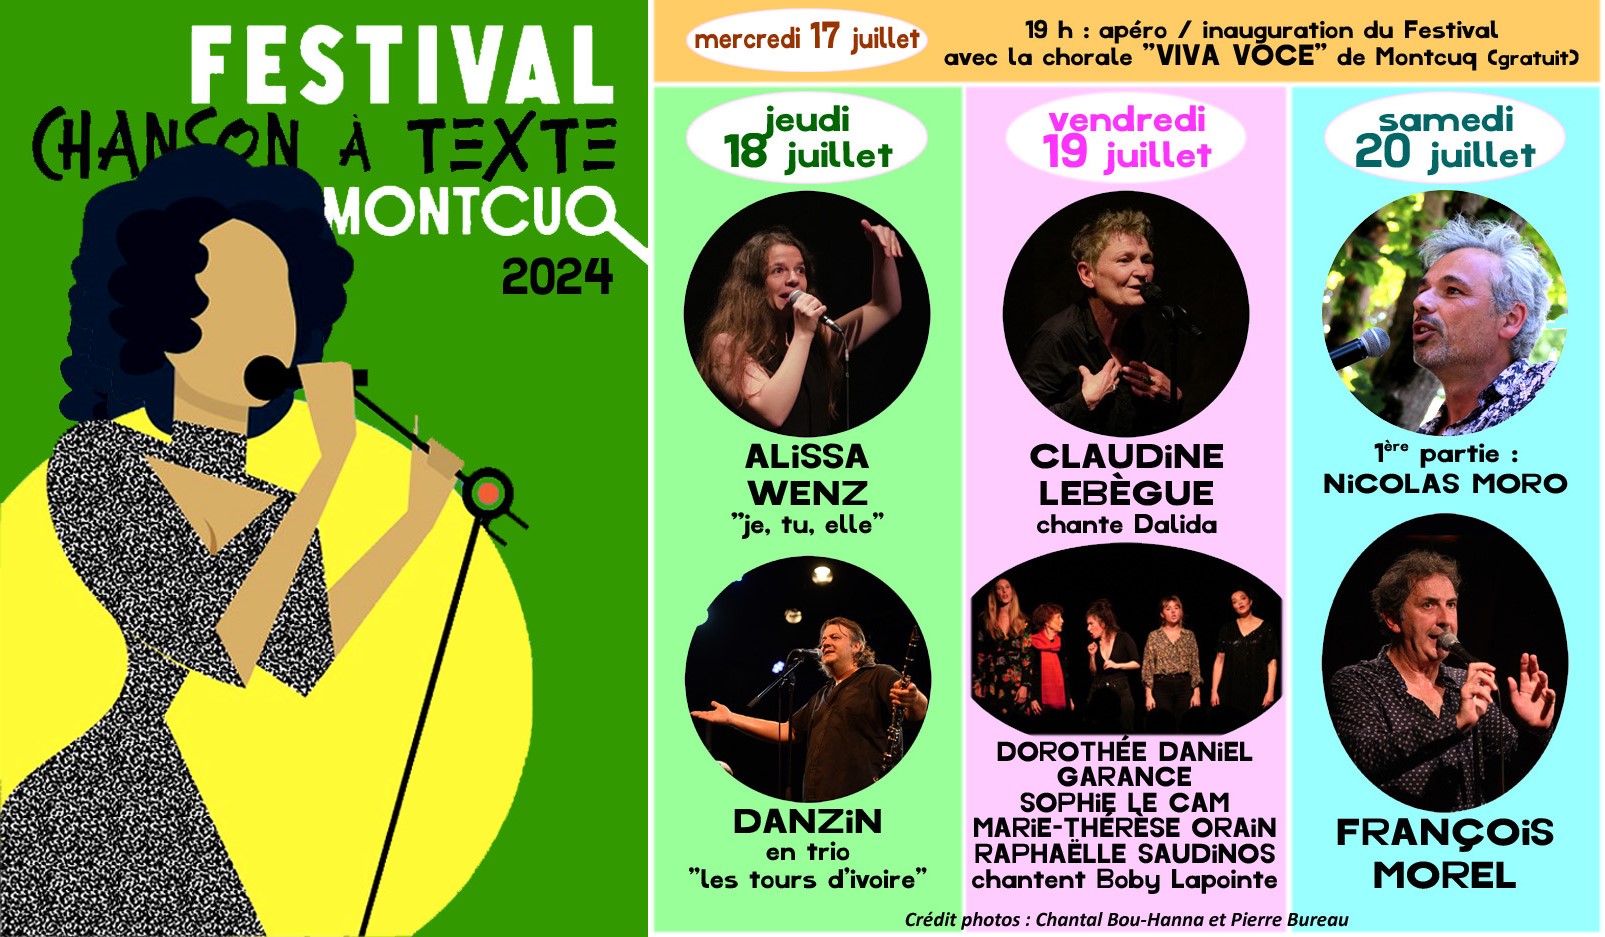 Festival de la Chanson à Texte de Montcuq 2023 : Alissa Wenz "je